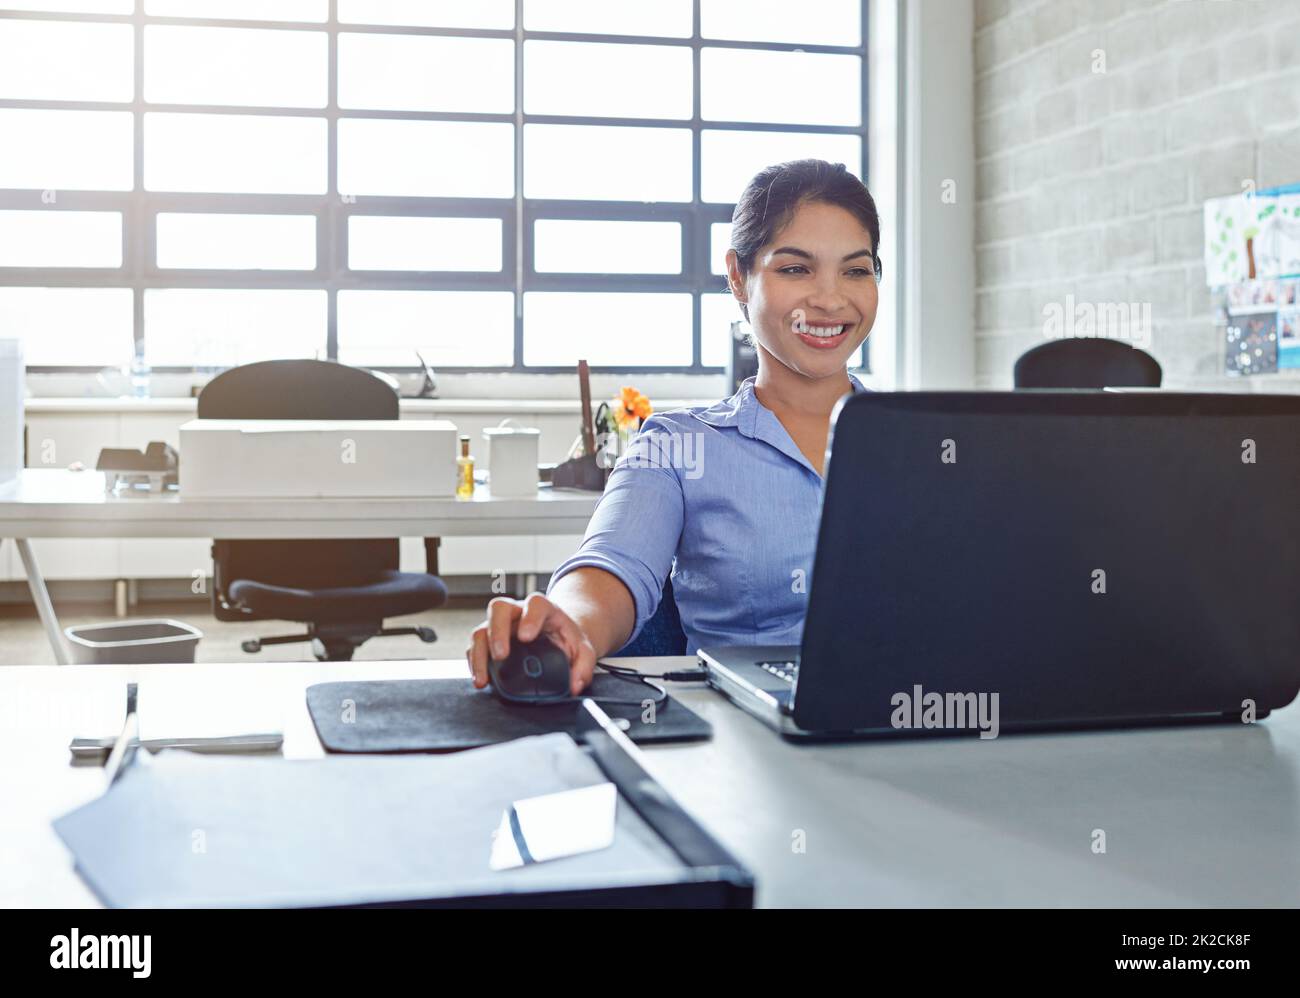 Das Lächeln, das aus einer erfolgreichen Karriere kommt. Aufnahme einer jungen Geschäftsfrau, die bei der Arbeit einen Laptop benutzt. Stockfoto